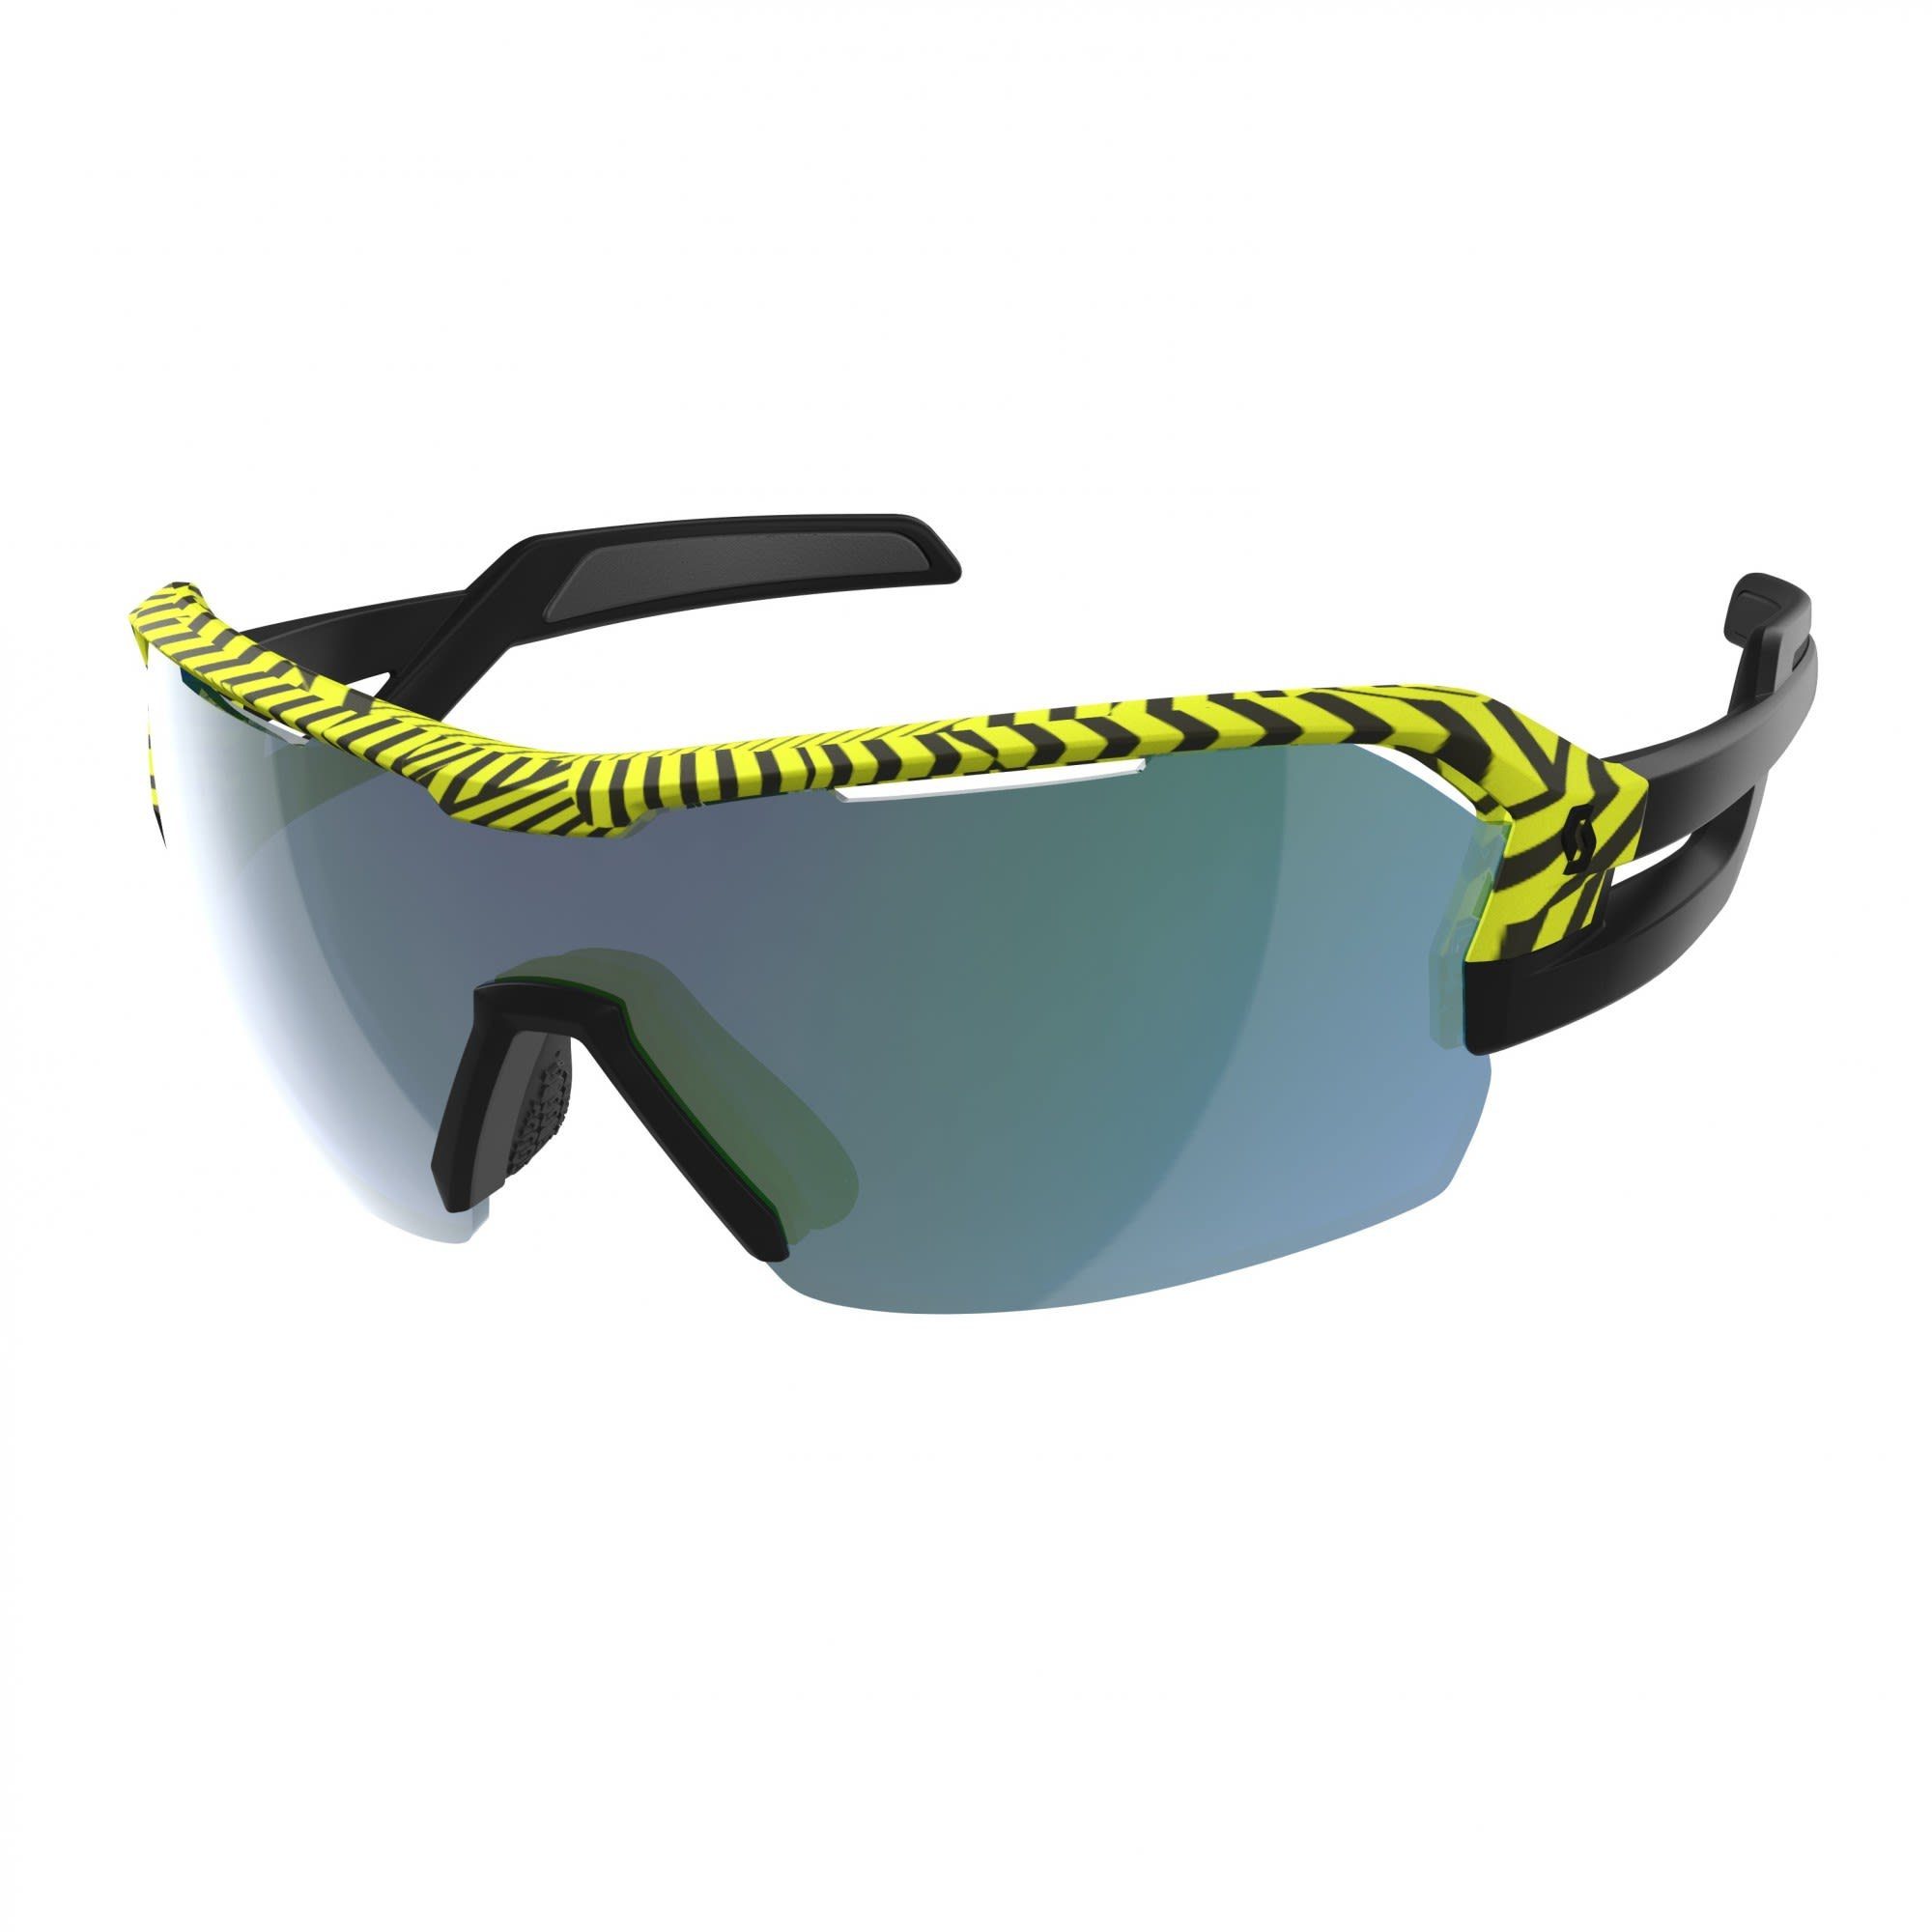 Scott Fahrradbrille Scott Spur Sunglasses Accessoires Black Yellow - Green Chrome Enhancer